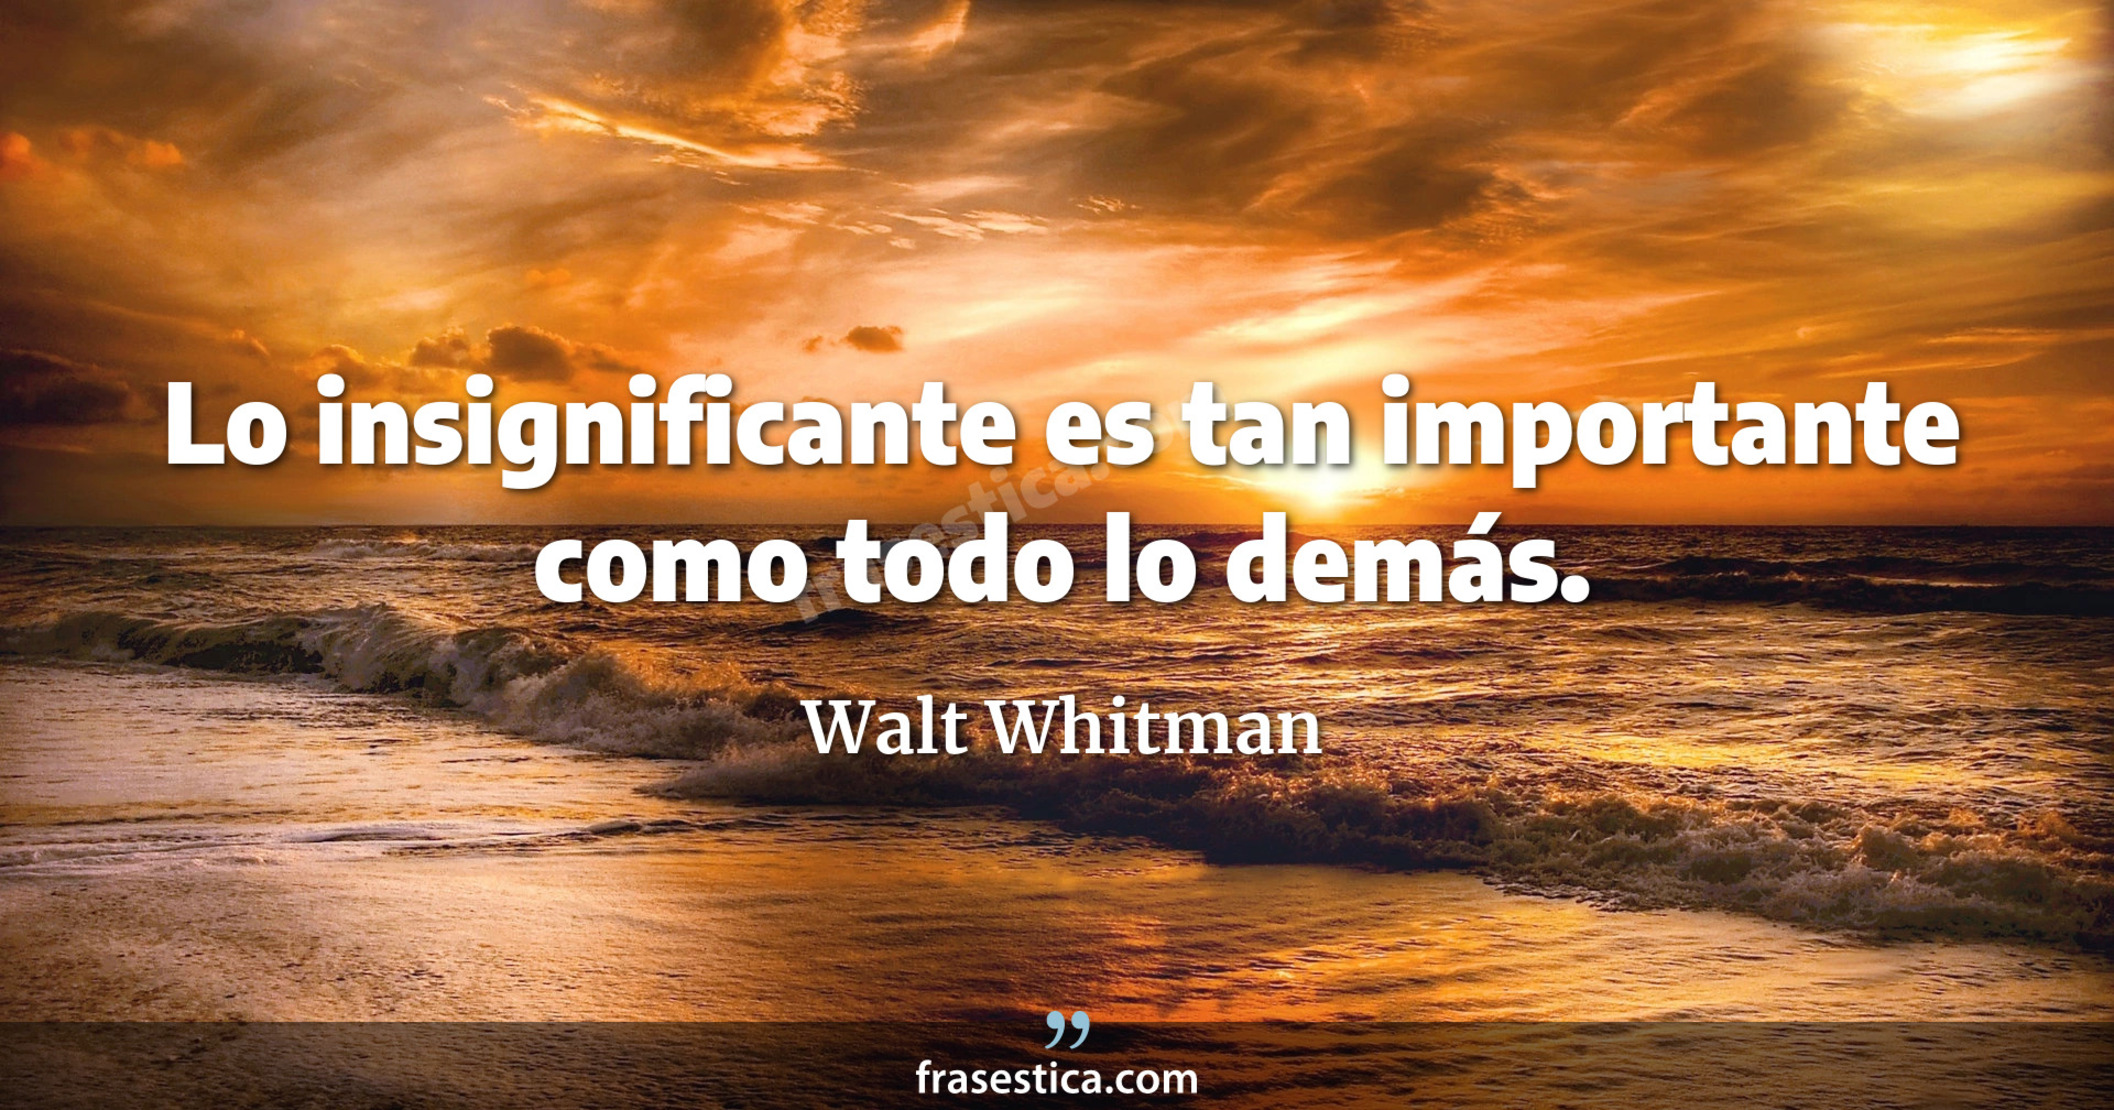 Lo insignificante es tan importante como todo lo demás. - Walt Whitman